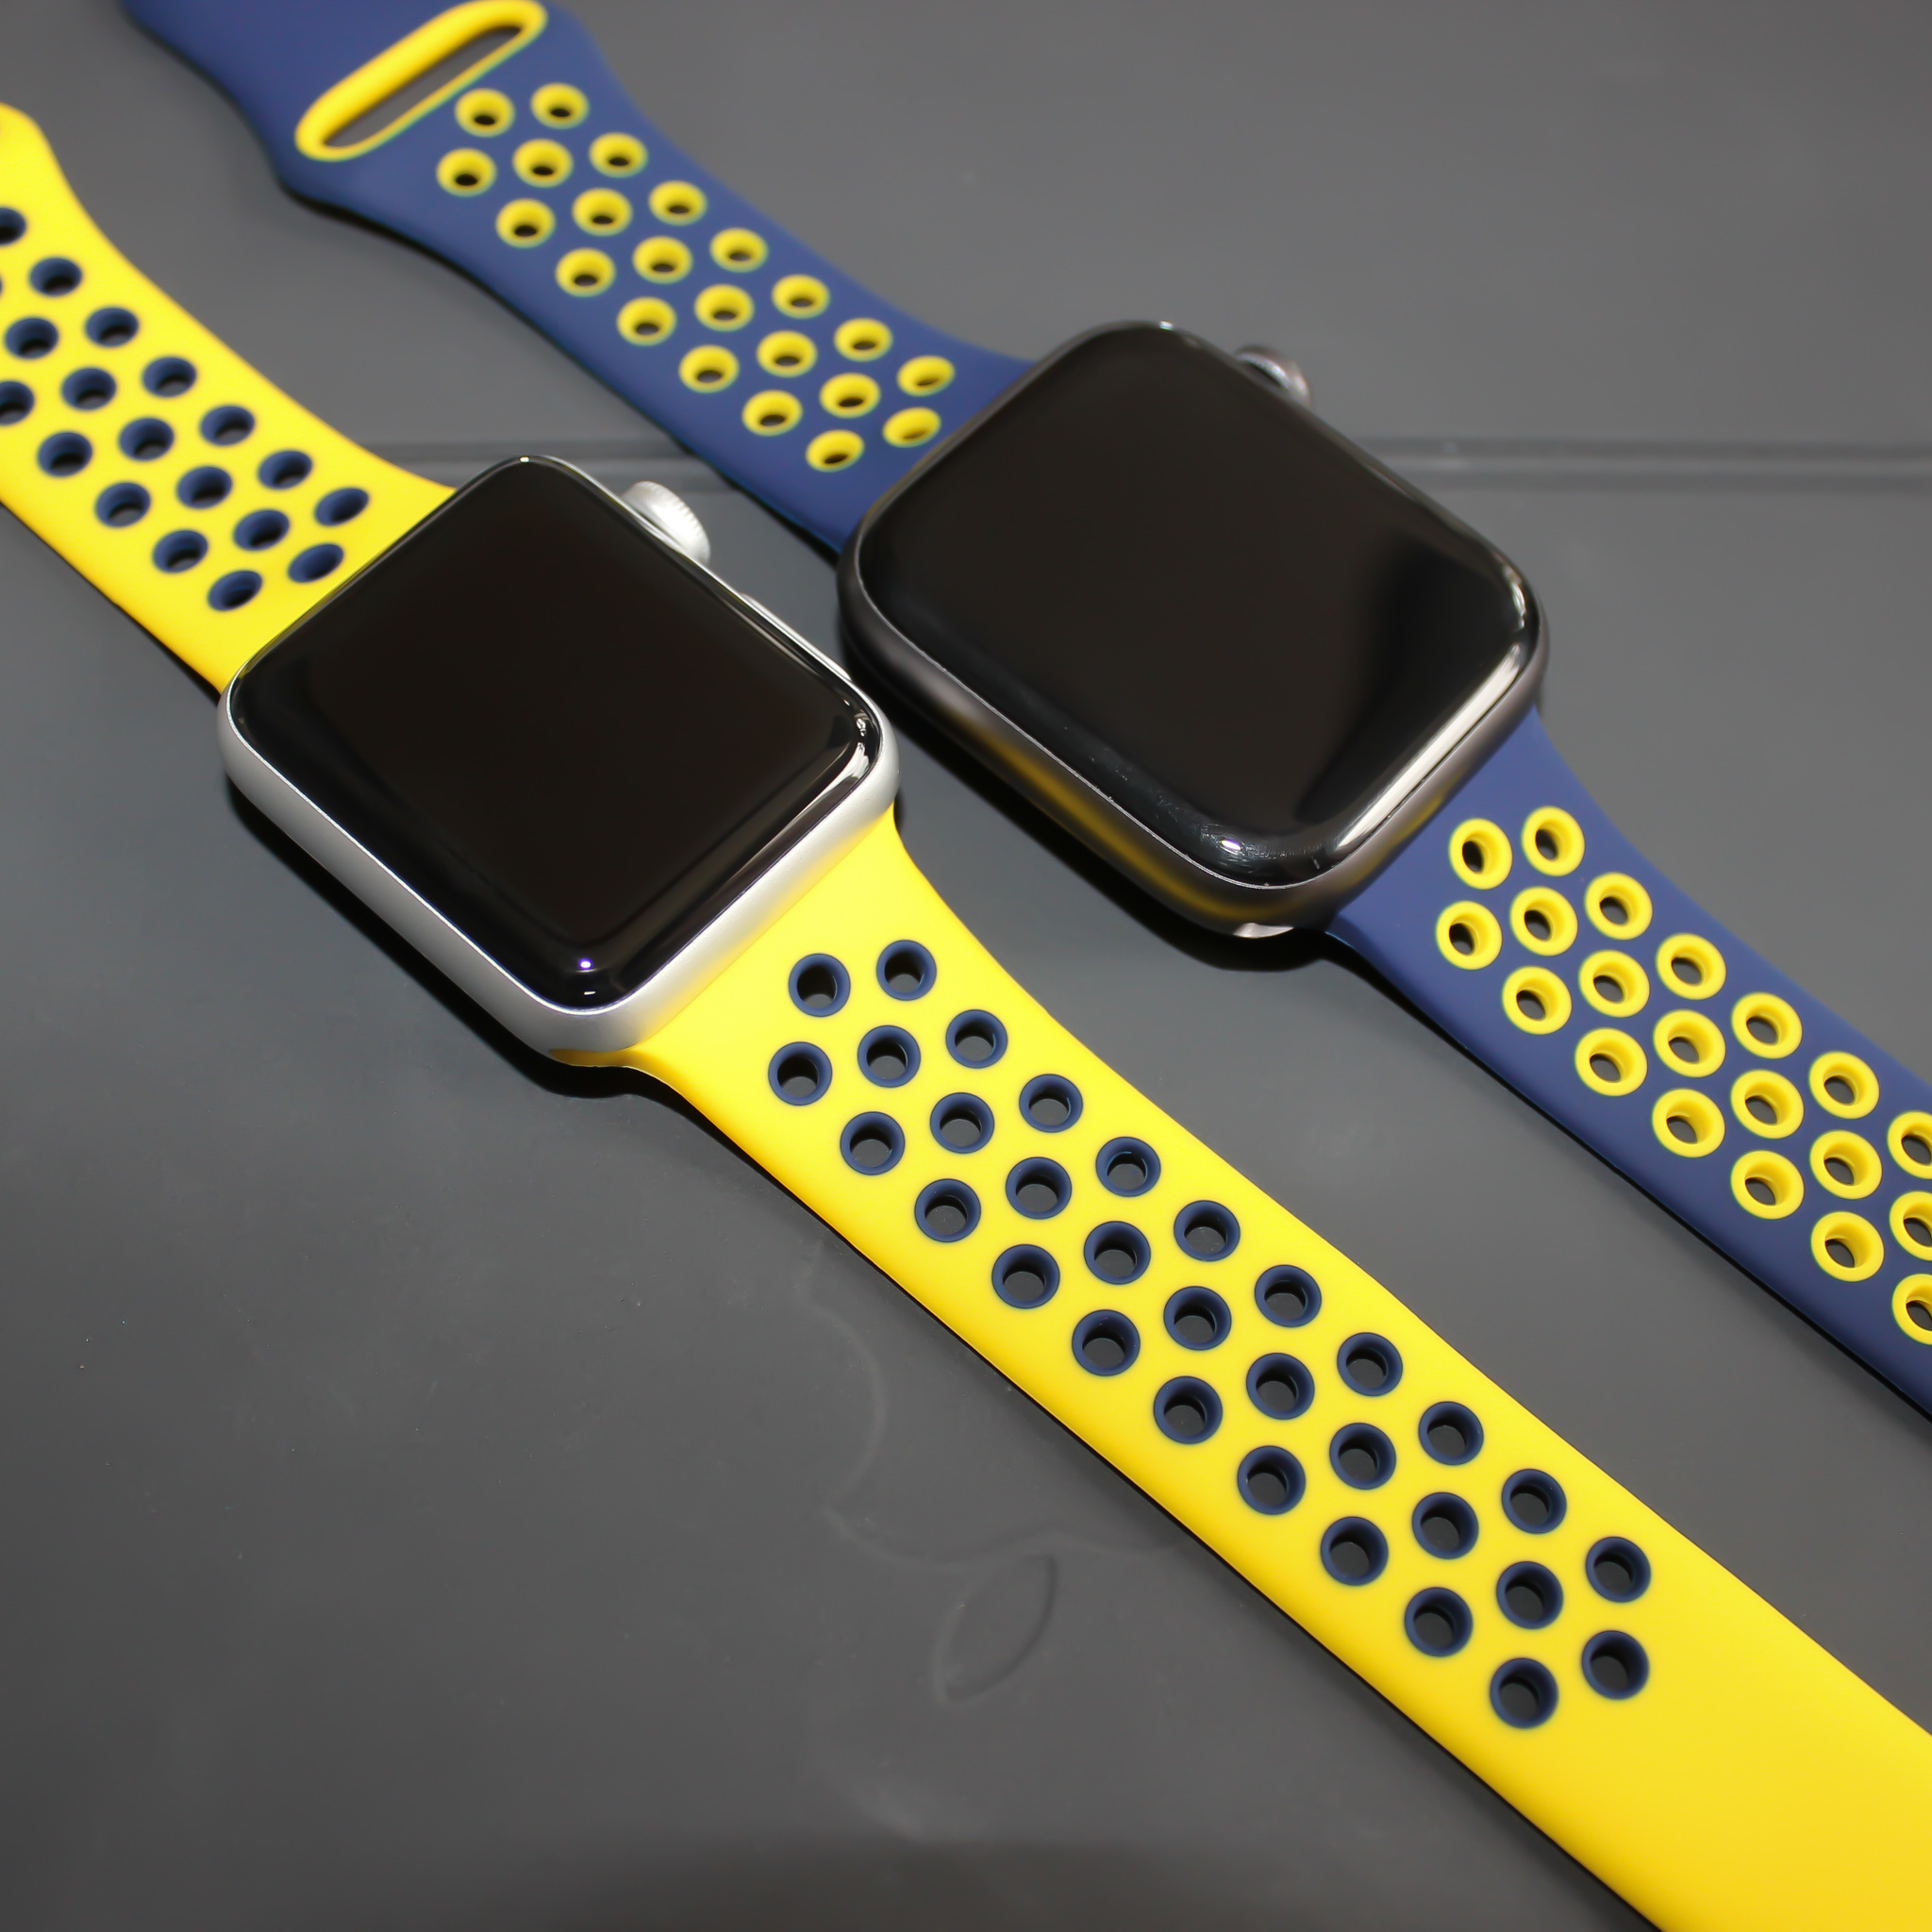 Apple Watch dubbel sport band - donkerblauw geel